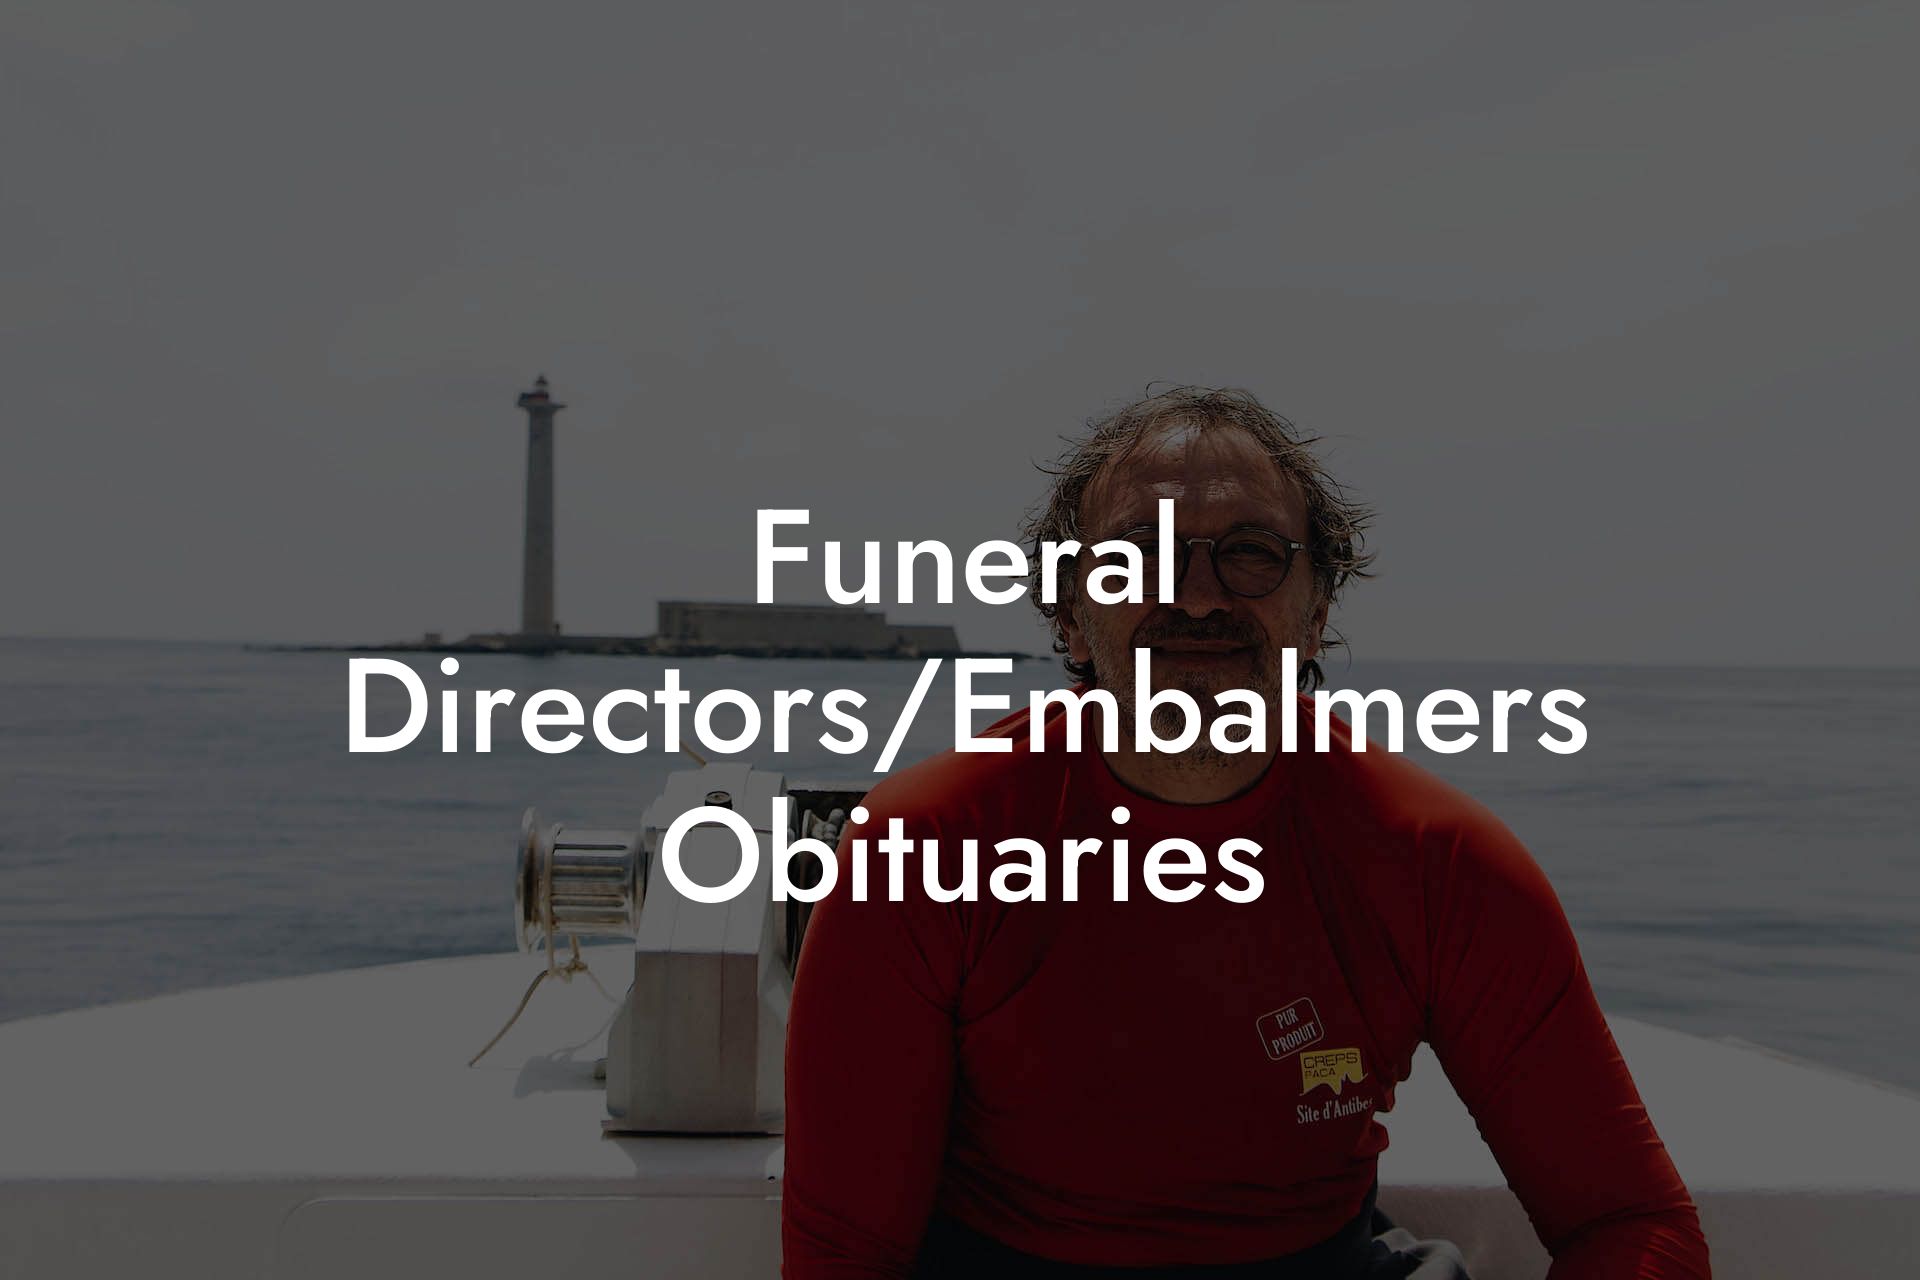 Funeral Directors/Embalmers Obituaries